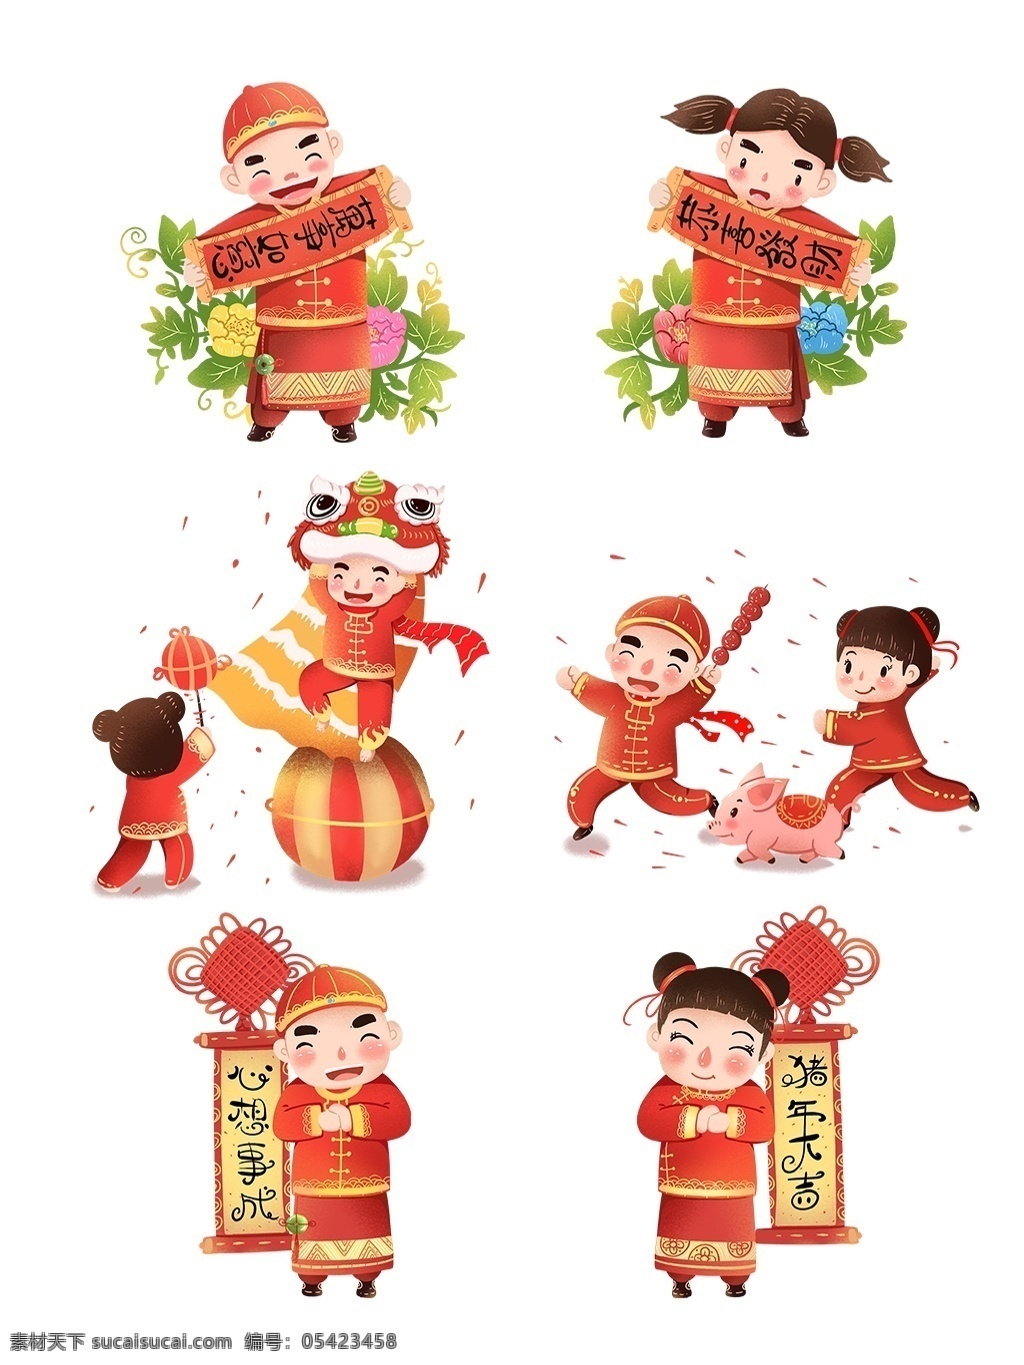 2019 猪年 春节 福娃 喜气洋洋 插画 中国风 对联 舞狮 拜年 糖葫芦